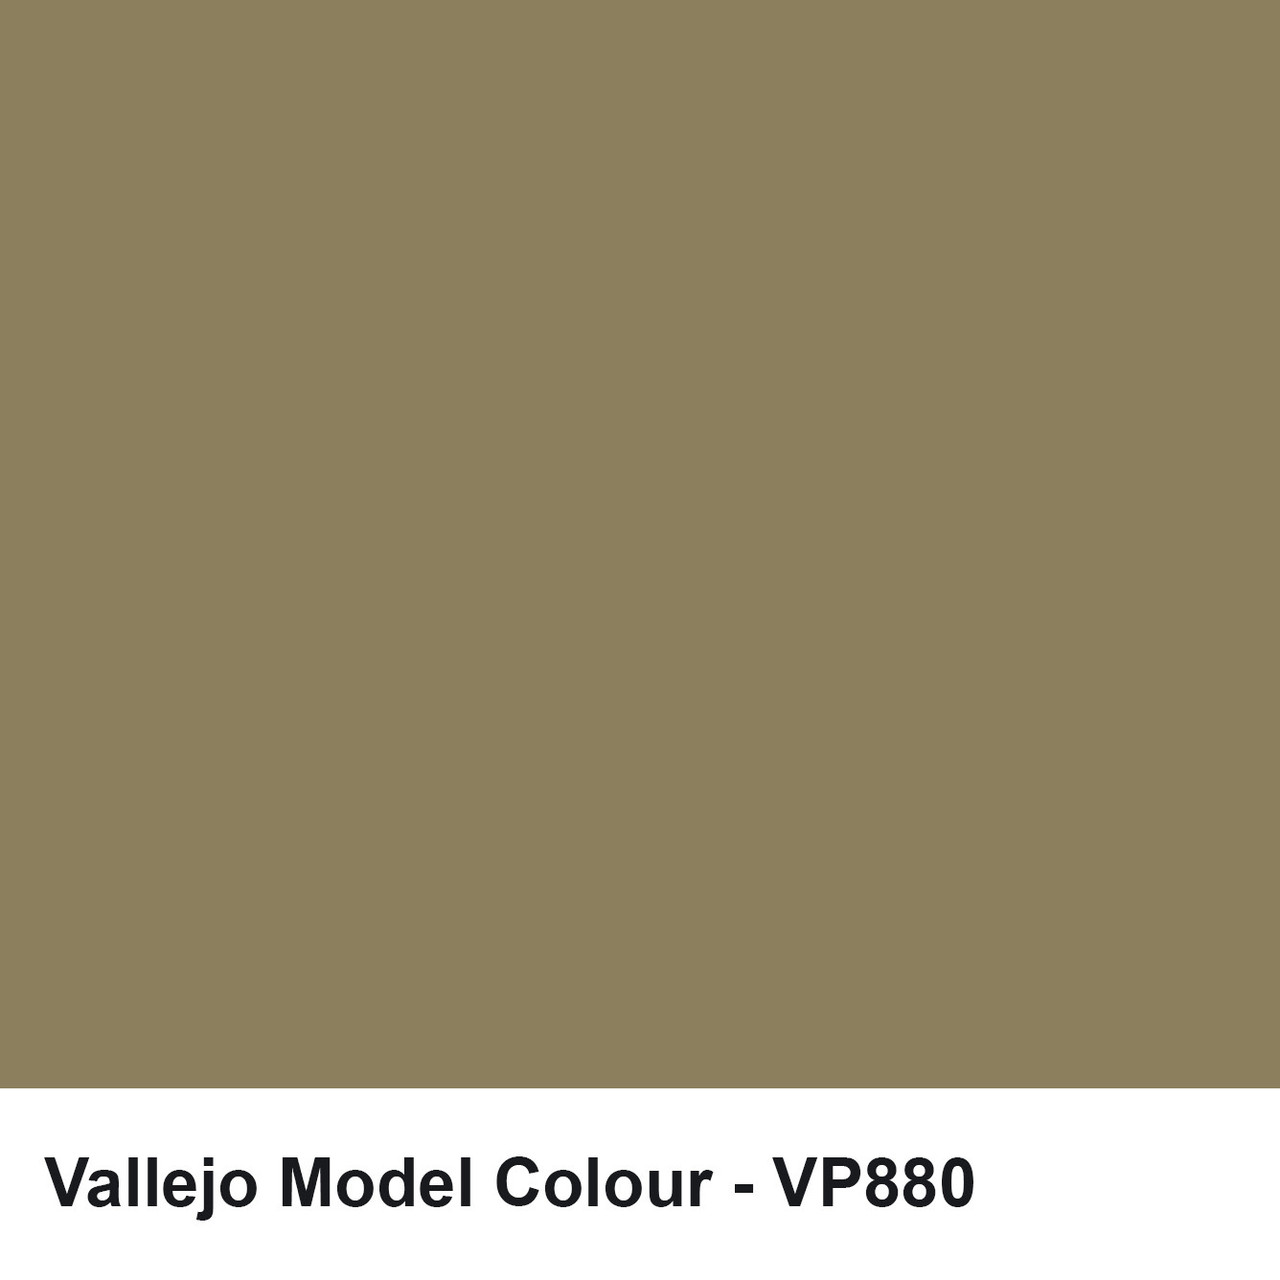 Acrylic color Vallejo Model Color 70880 Khaki Grey (17ml)